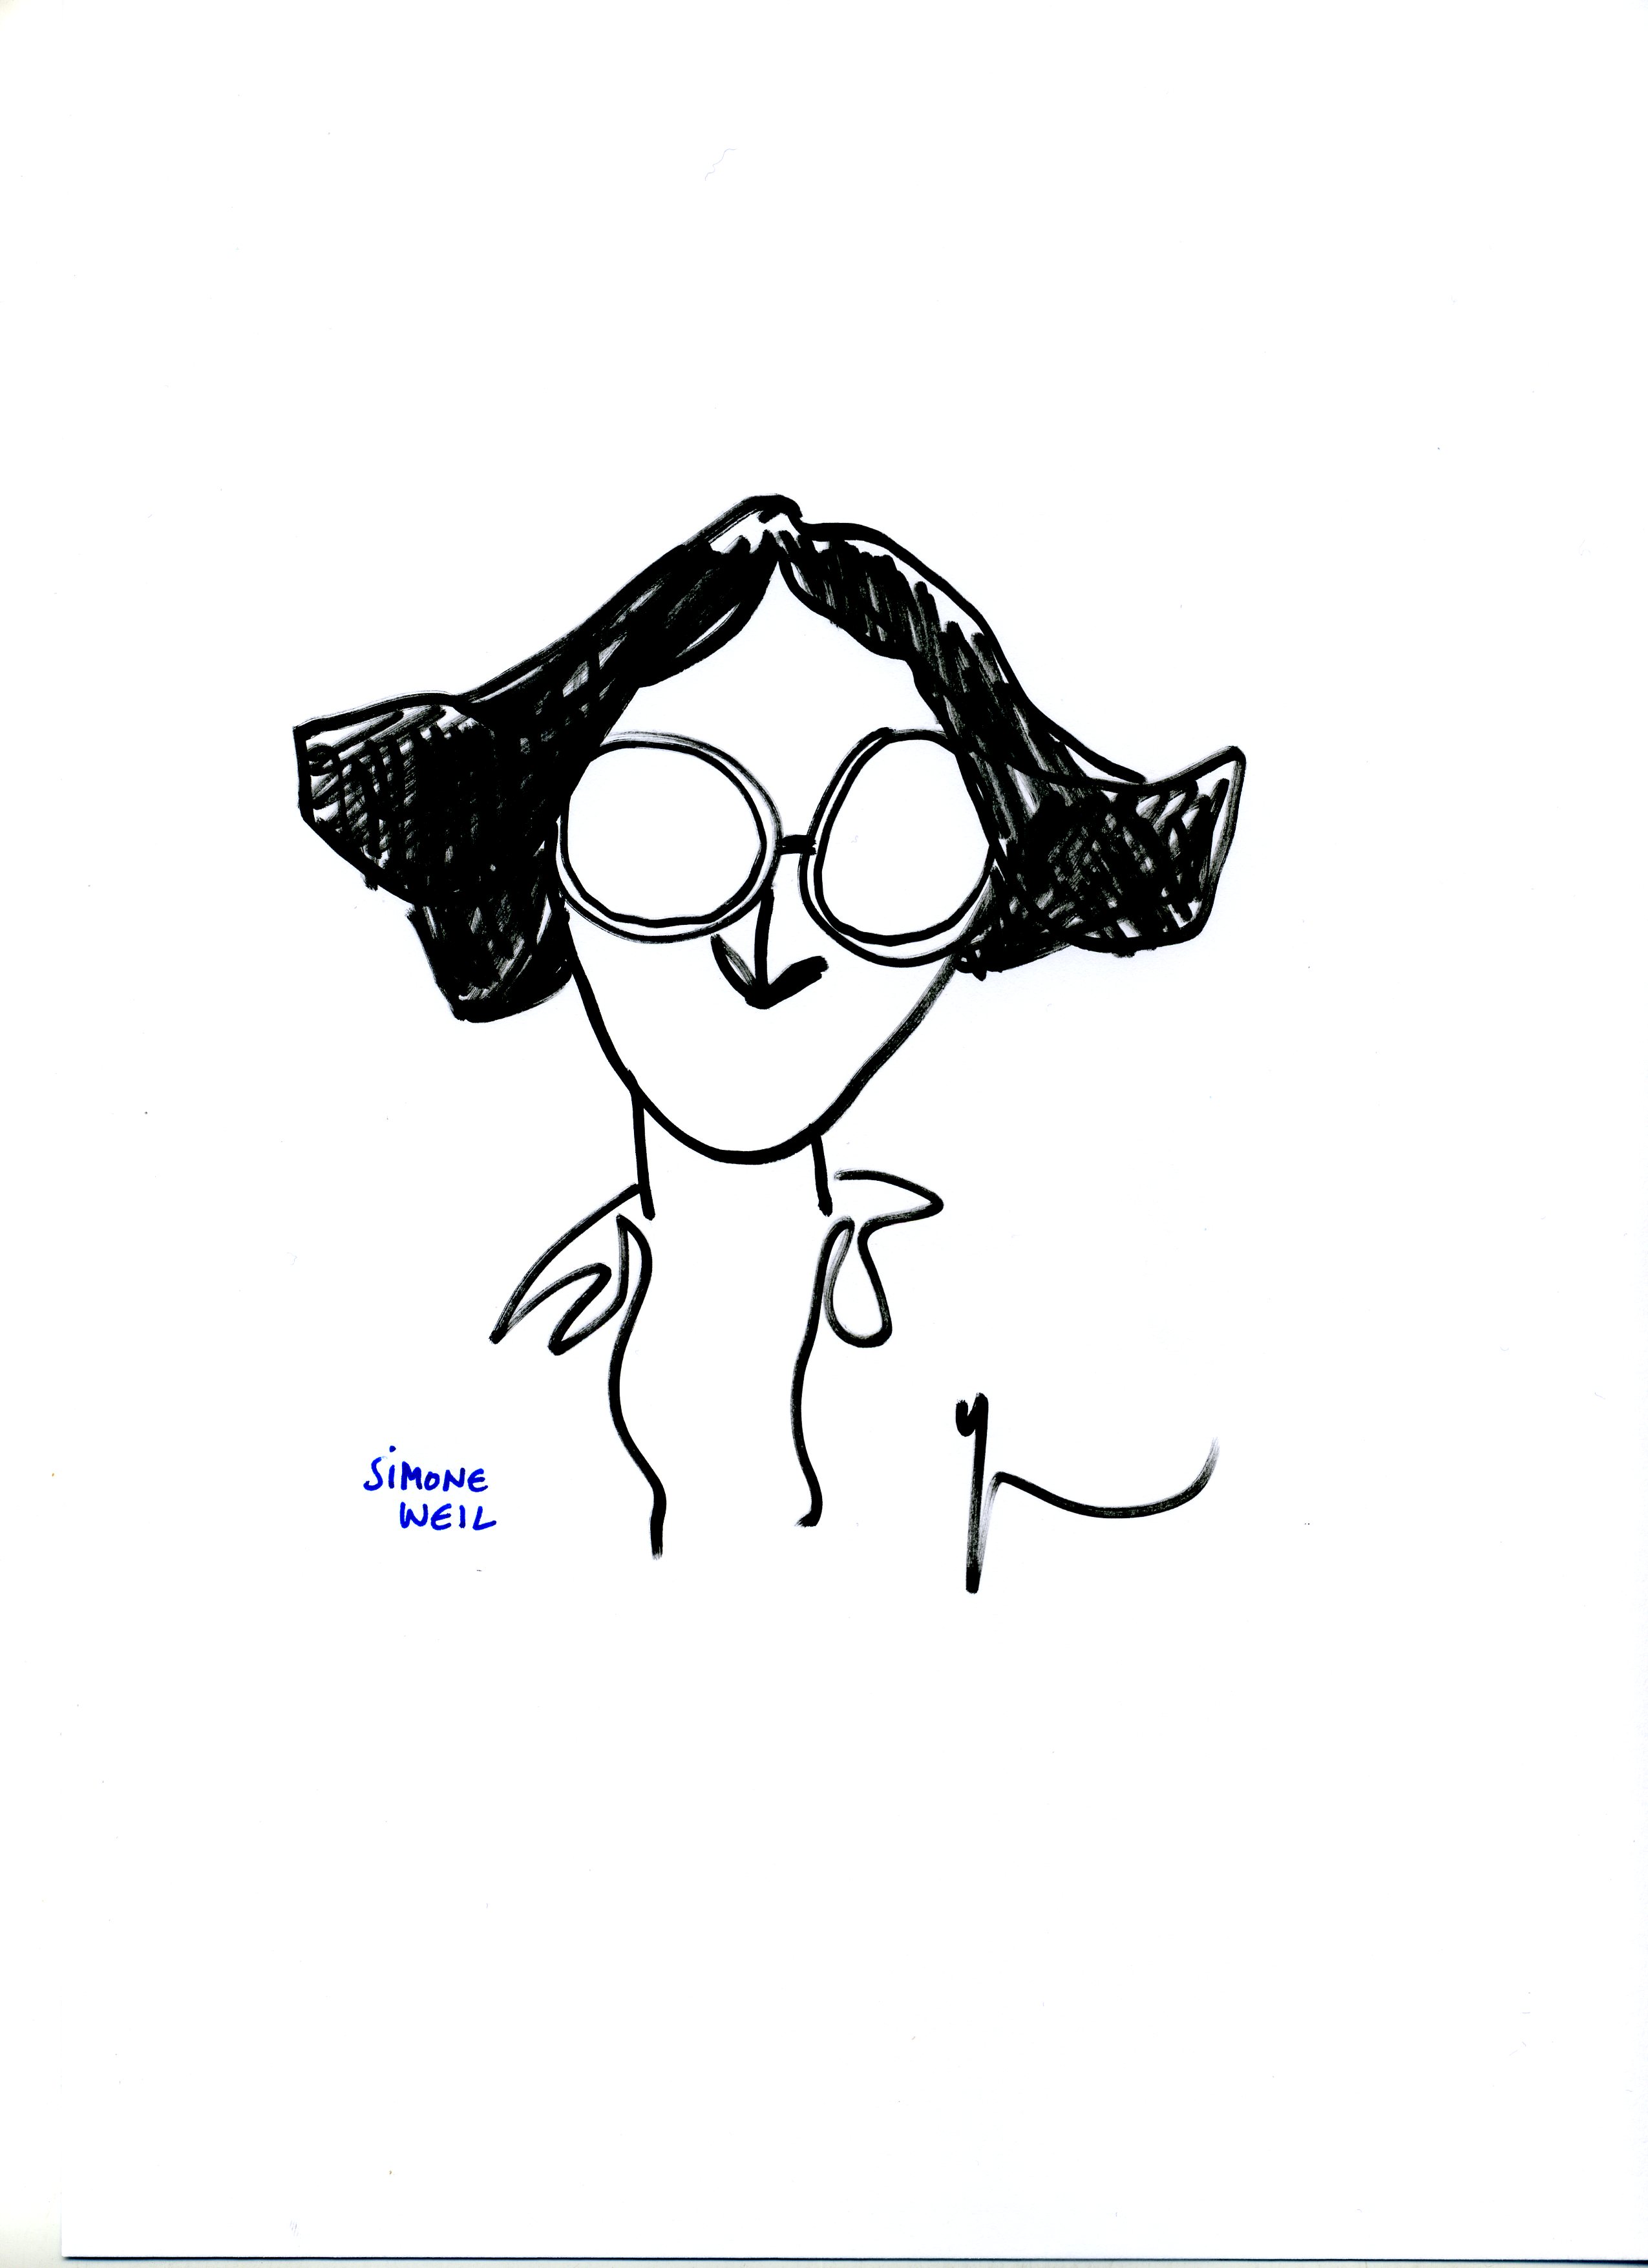 Portrait de Simone Weil dessiné par Yann Moix